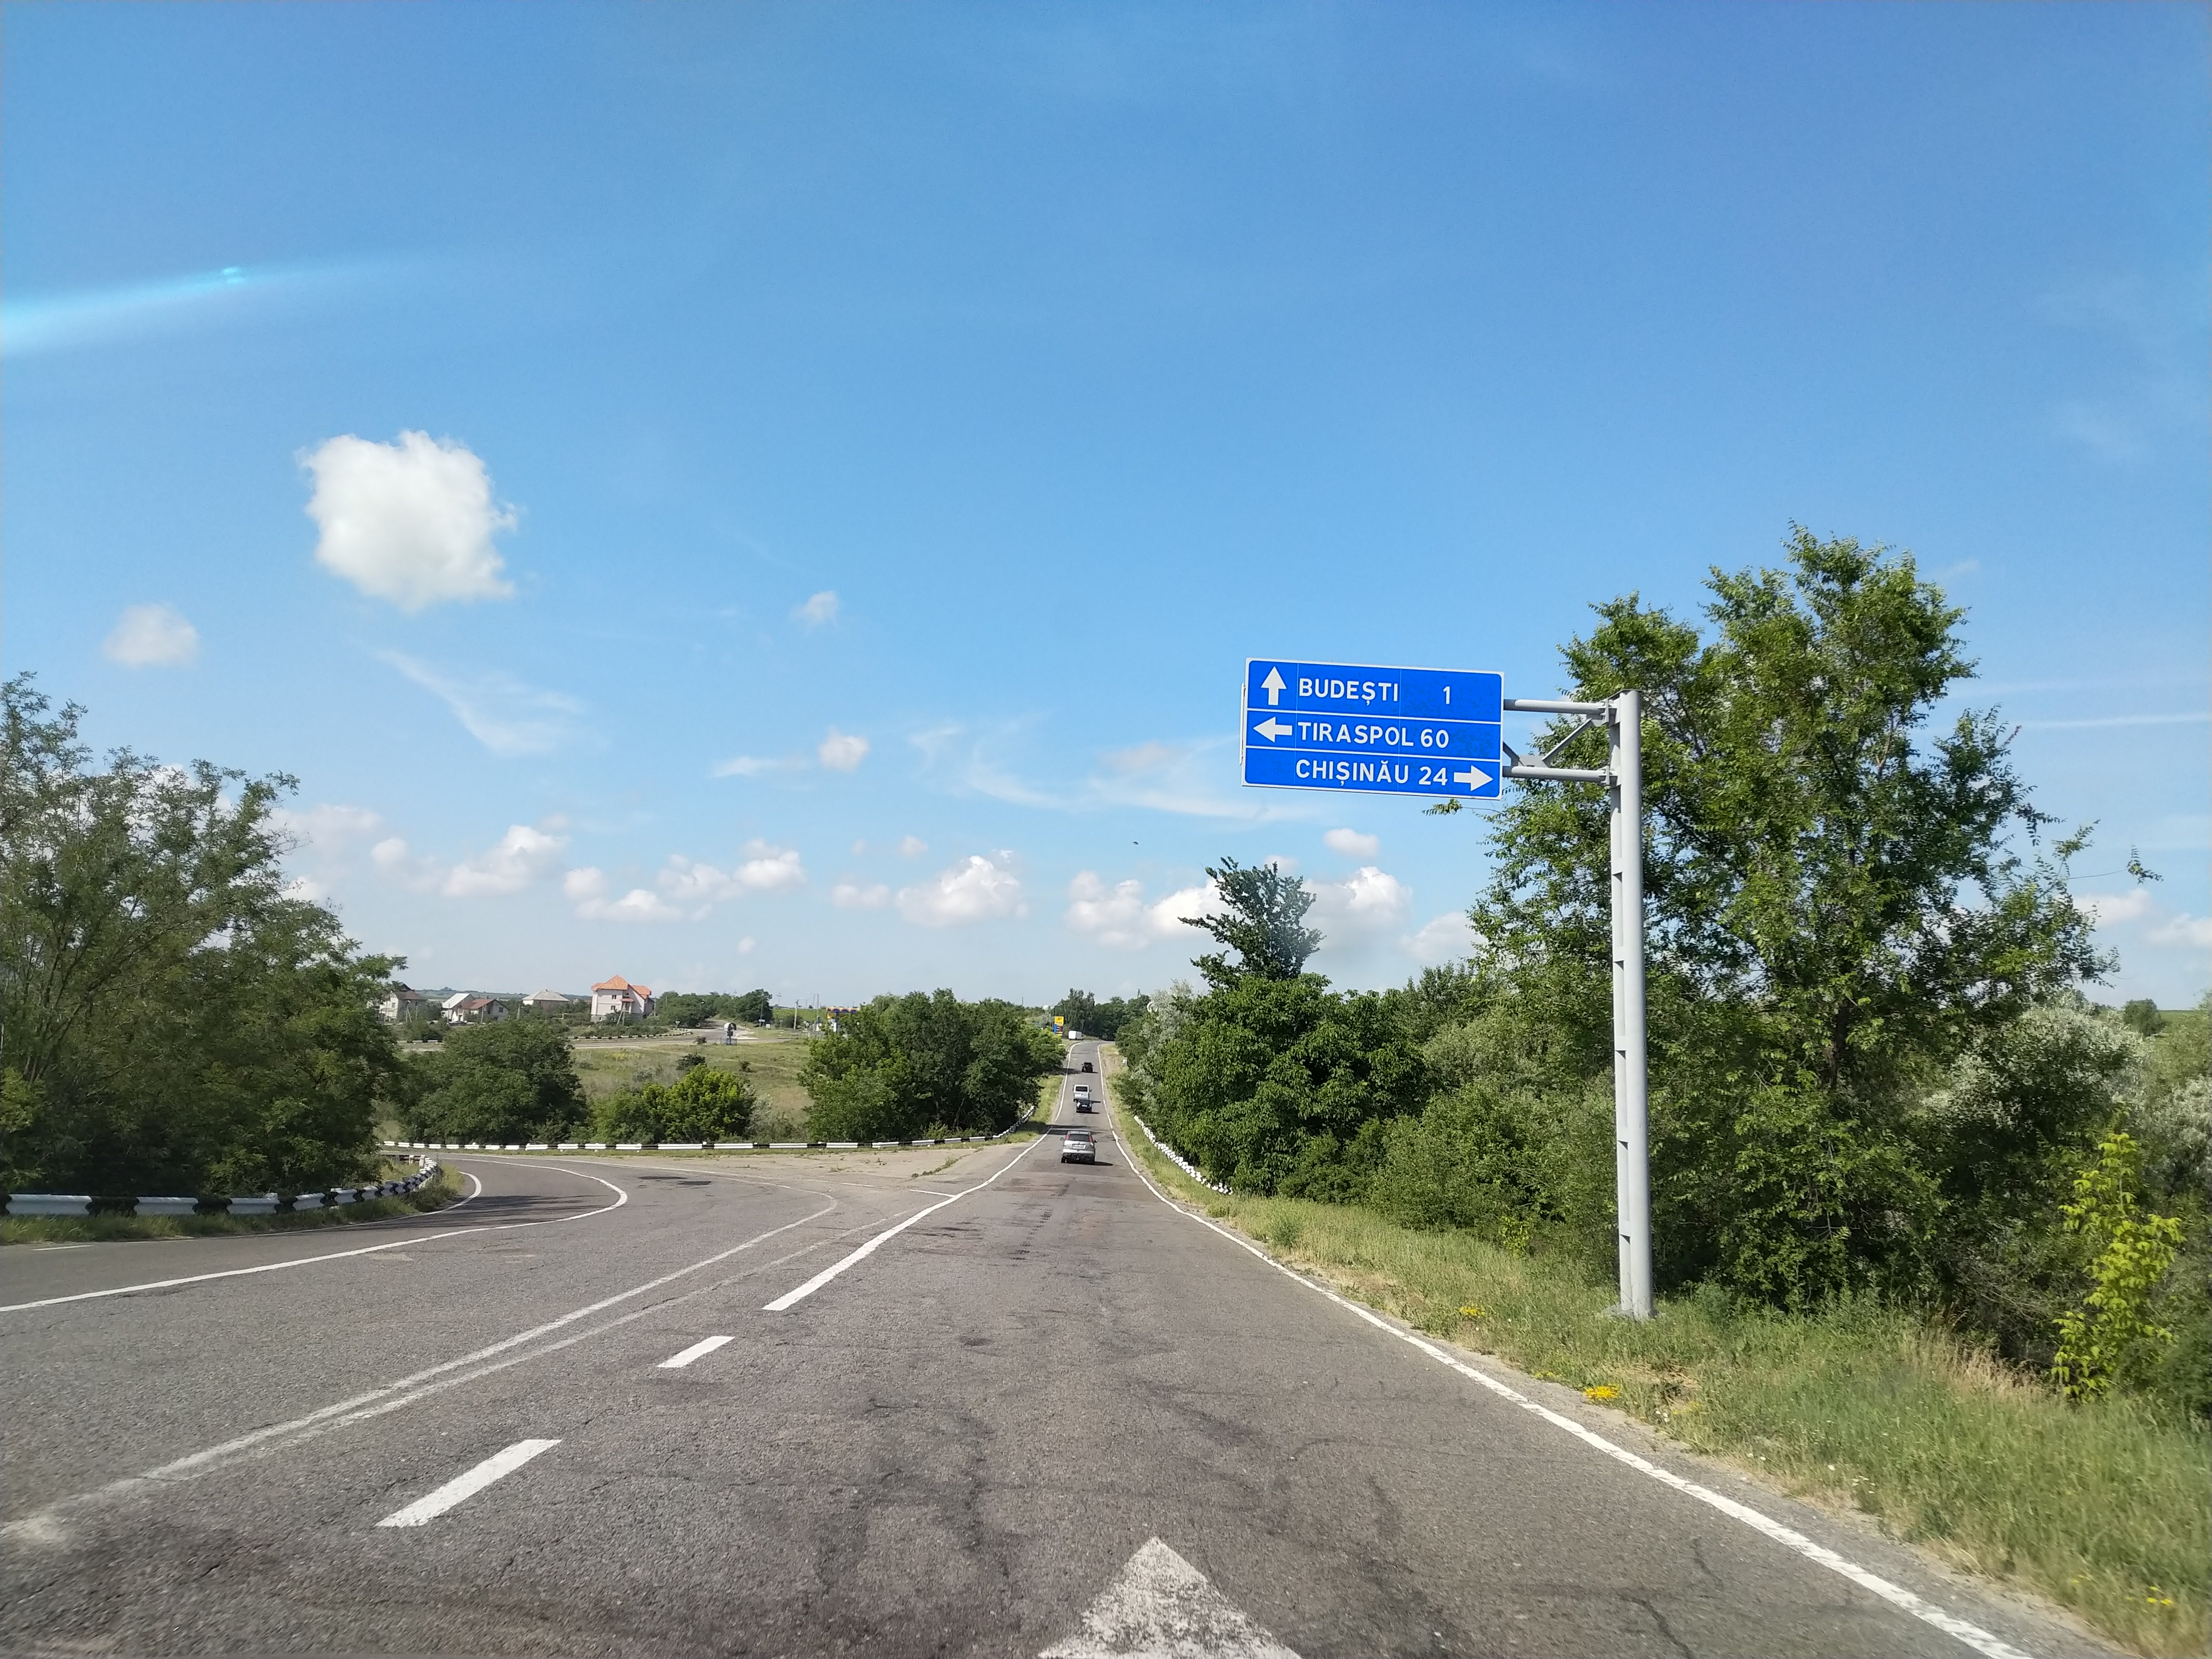 MD, Municipiul Chişinău, Satul Budeşti, Drumul R5 Vadul lui Voda - Chisinau